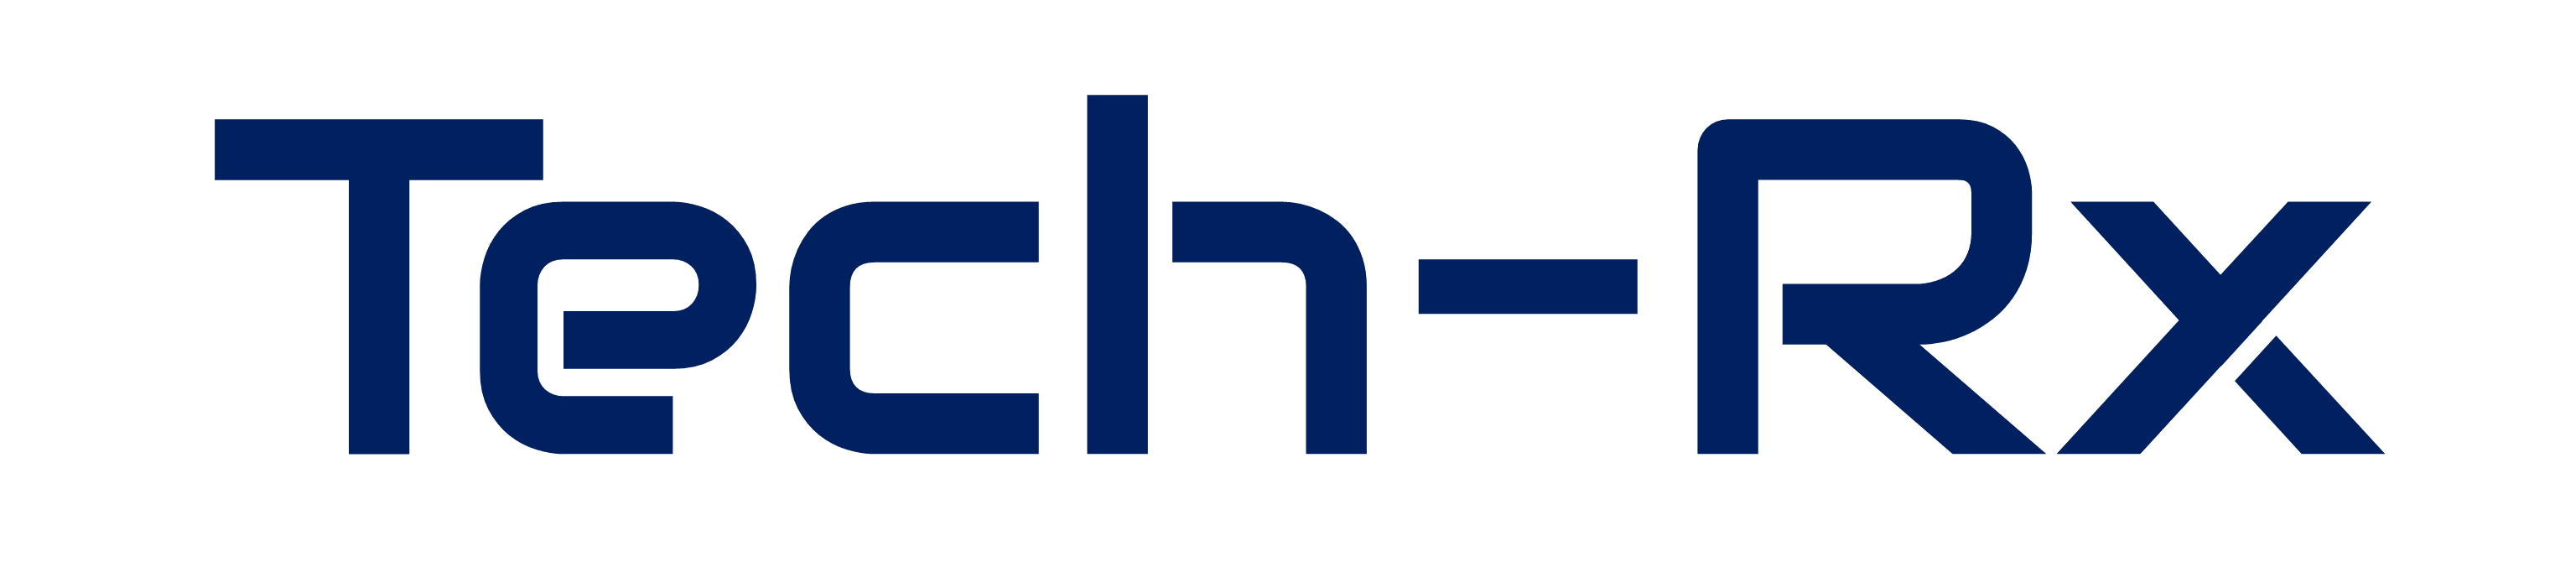 Tech-Rx_logo